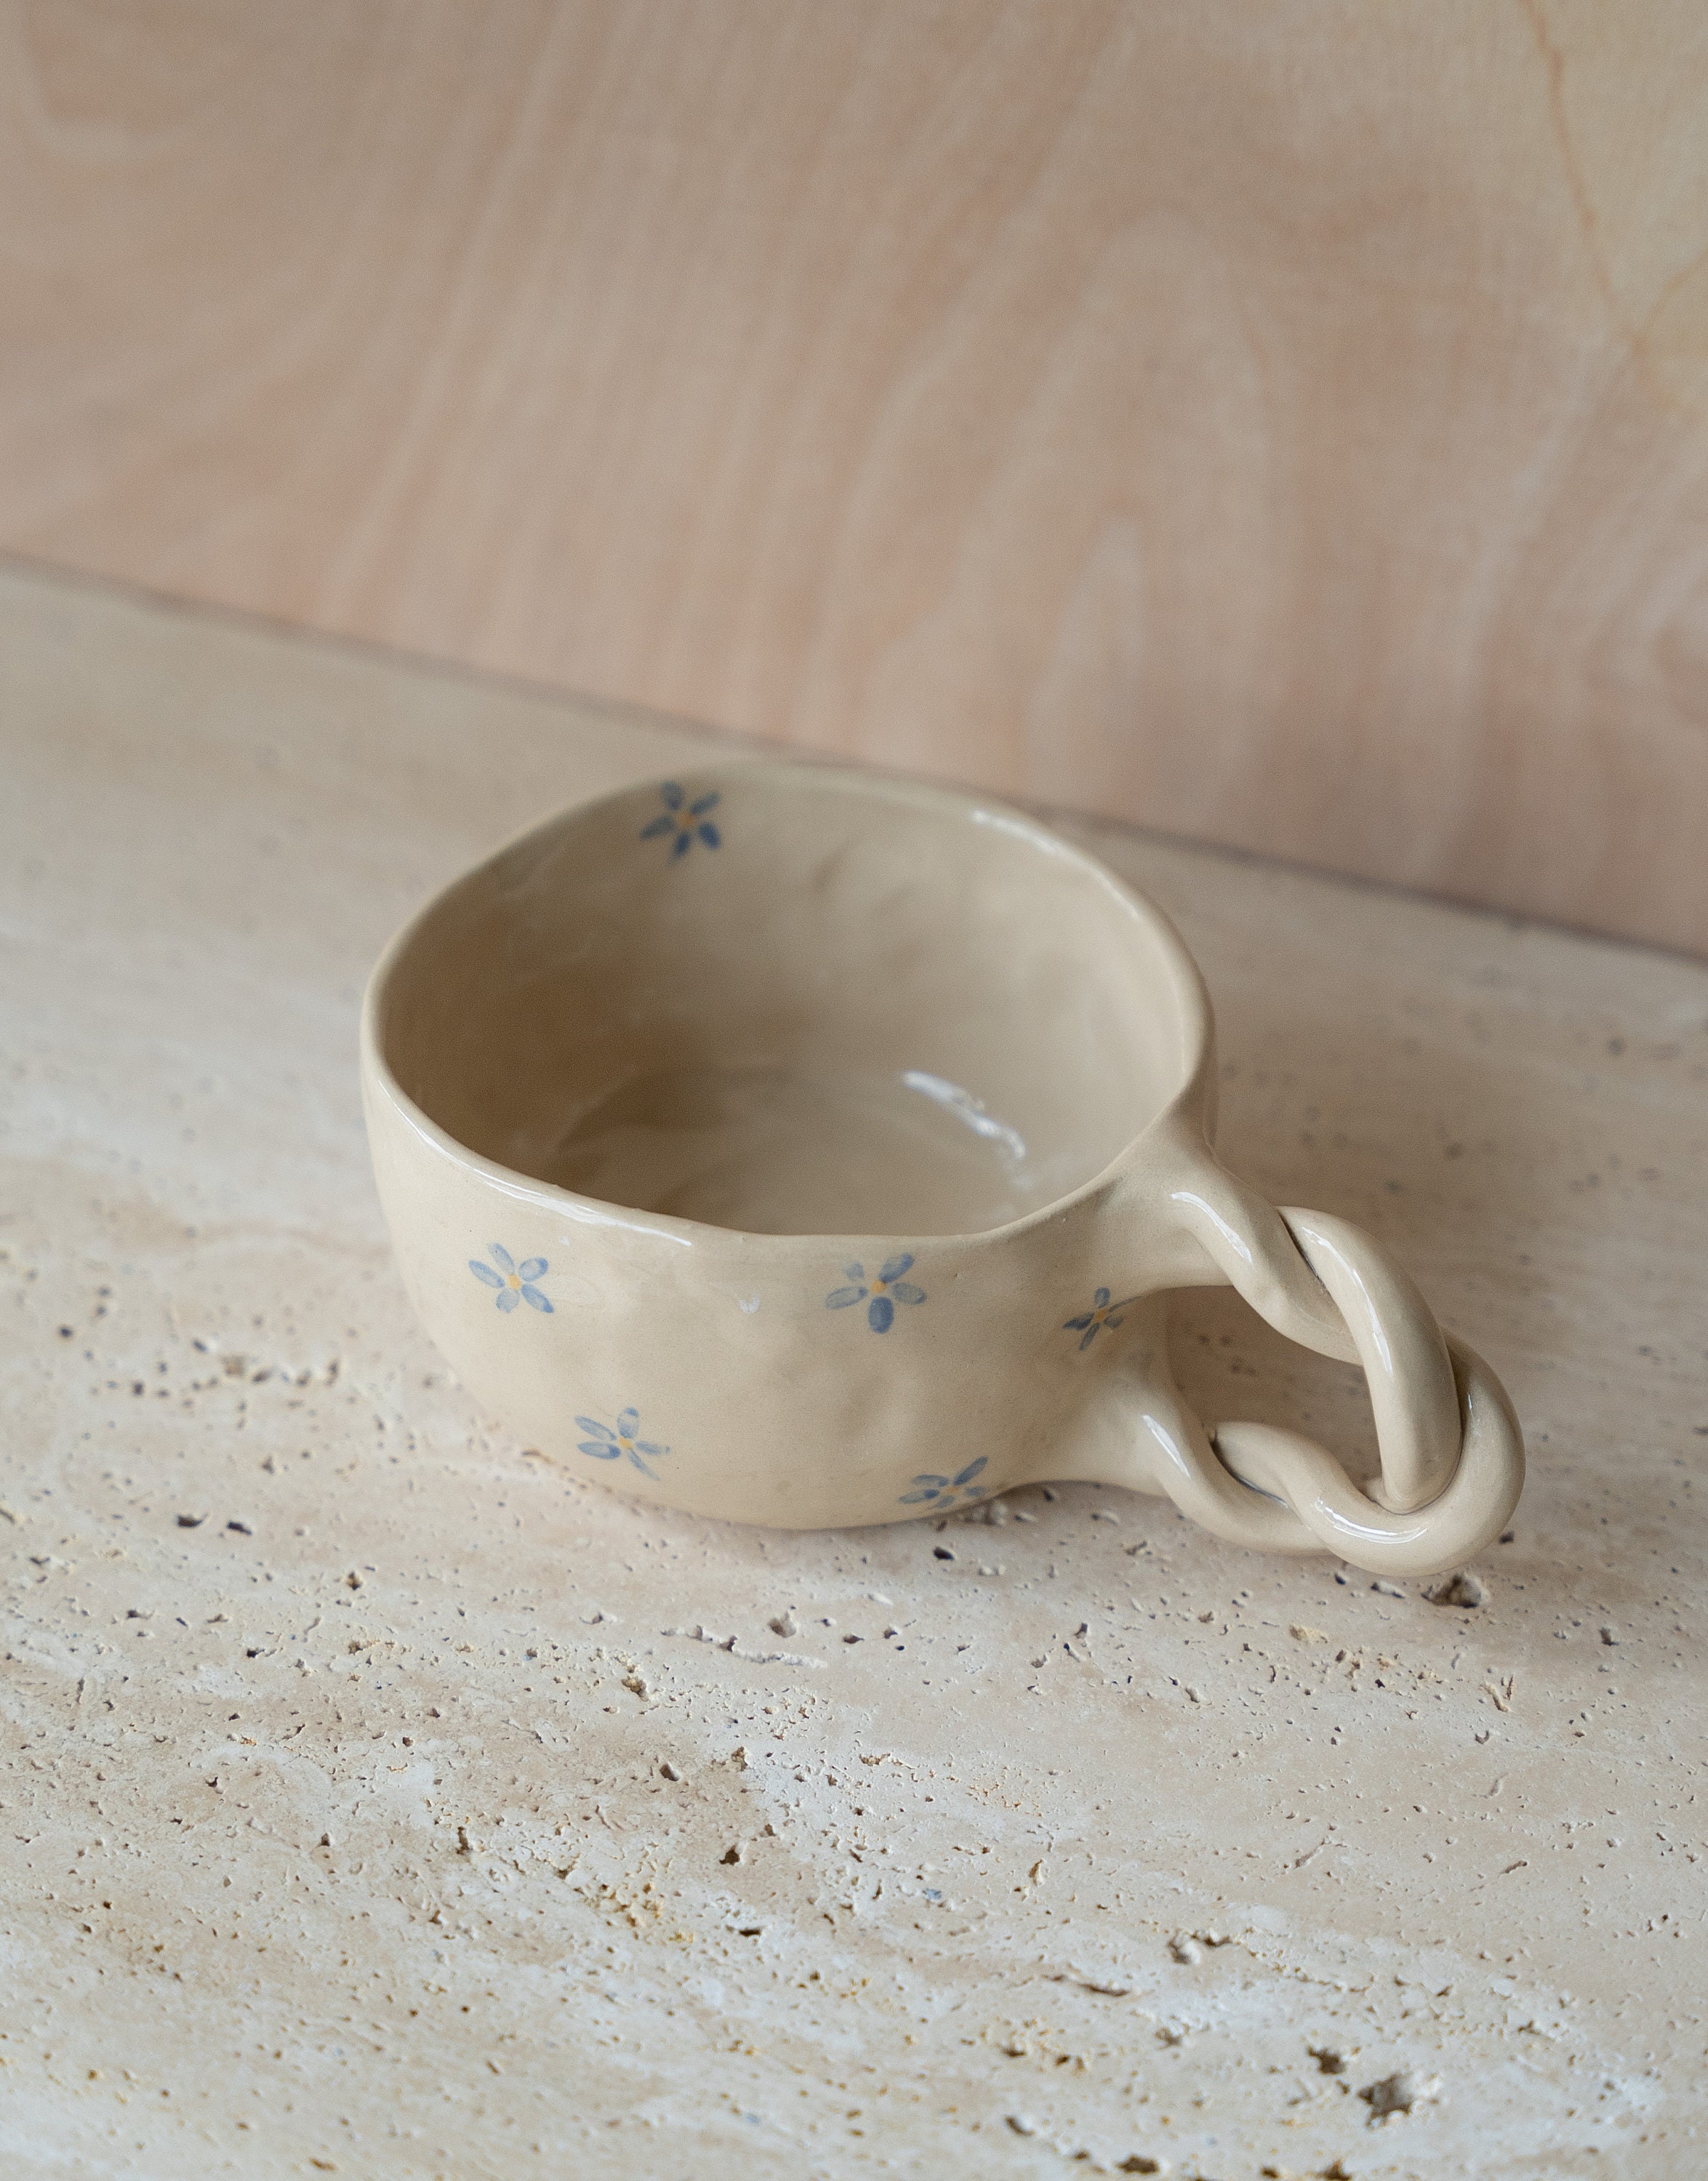 Blue Flower Ceramic Handmade Mug-350 Ml 